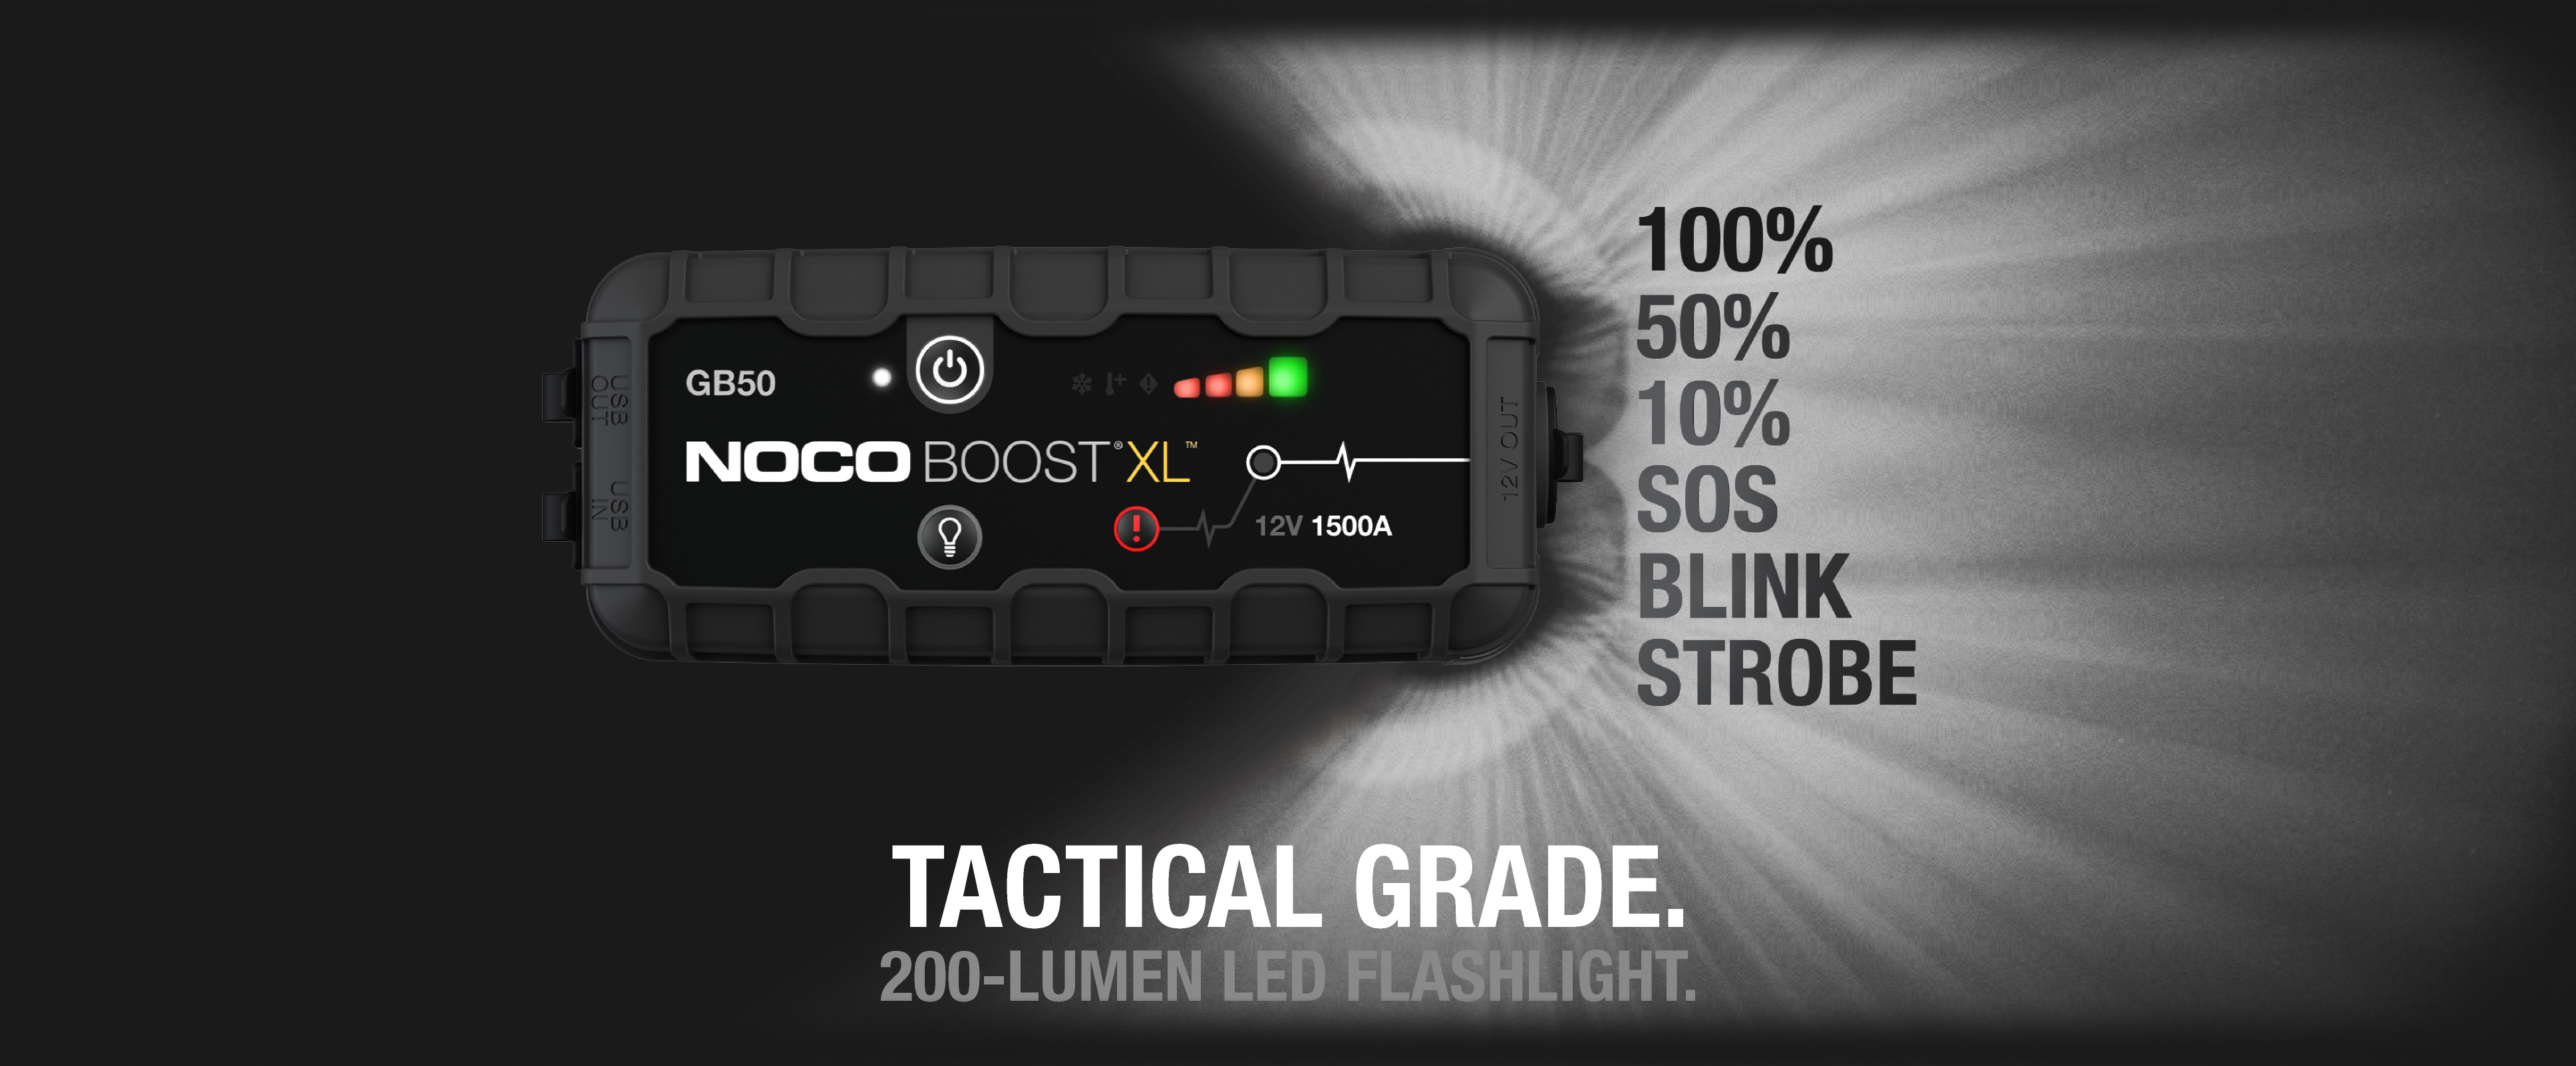 noco-gb50-boost-xl-lumen-200-led-flashlight-for-emergency2x.jpg